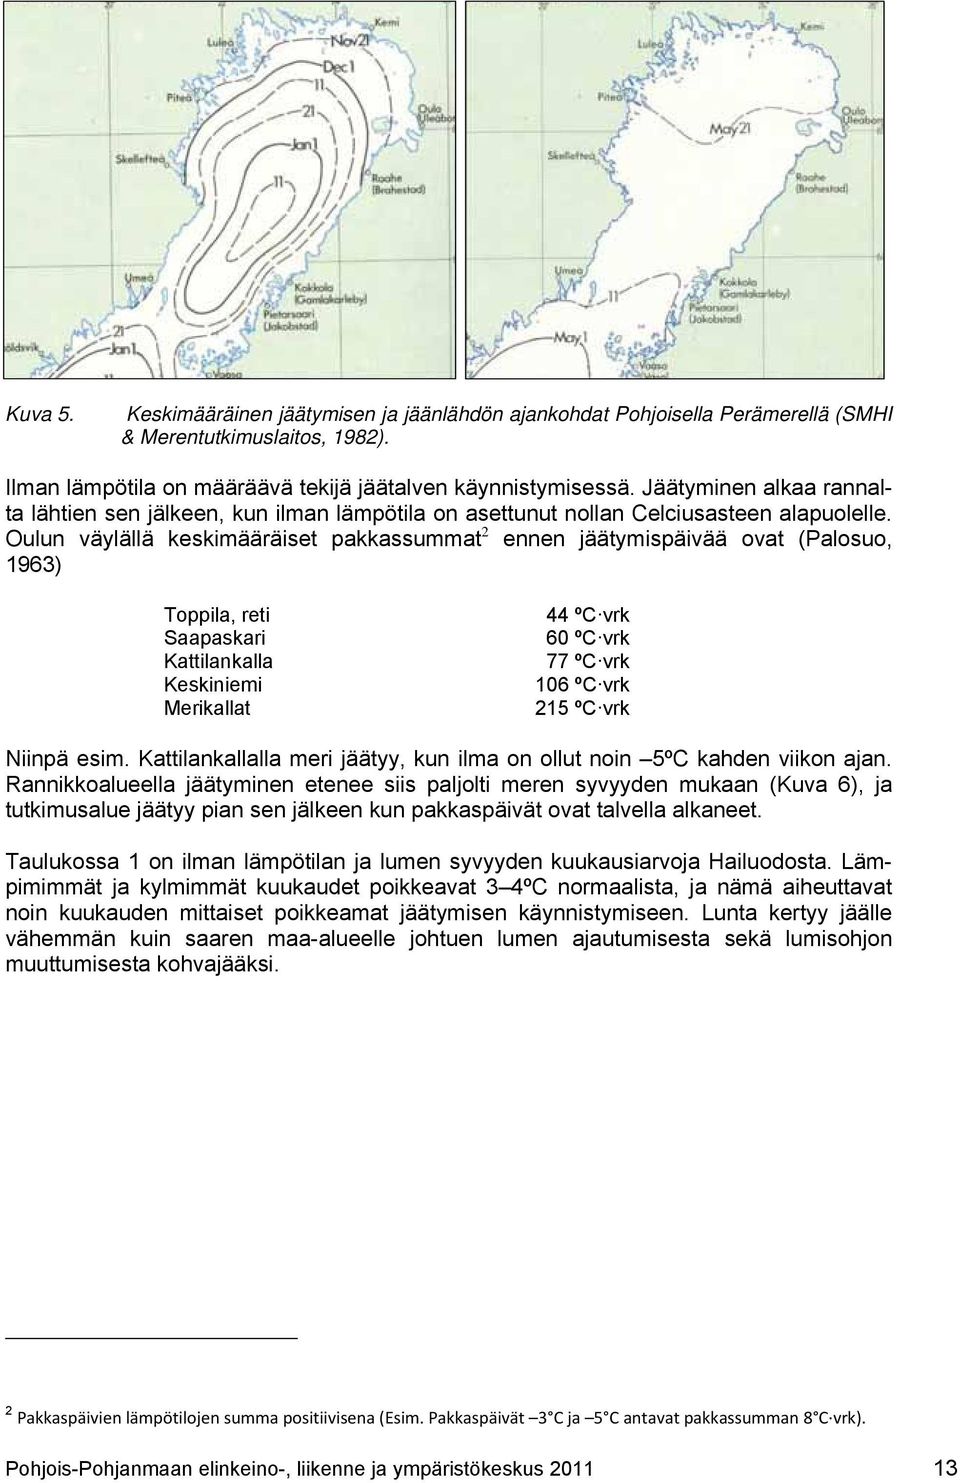 Oulun väylällä keskimääräiset pakkassummat 2 ennen jäätymispäivää ovat (Palosuo, 1963) Toppila, reti Saapaskari Kattilankalla Keskiniemi Merikallat 44 ºC vrk 60 ºC vrk 77 ºC vrk 106 ºC vrk 215 ºC vrk